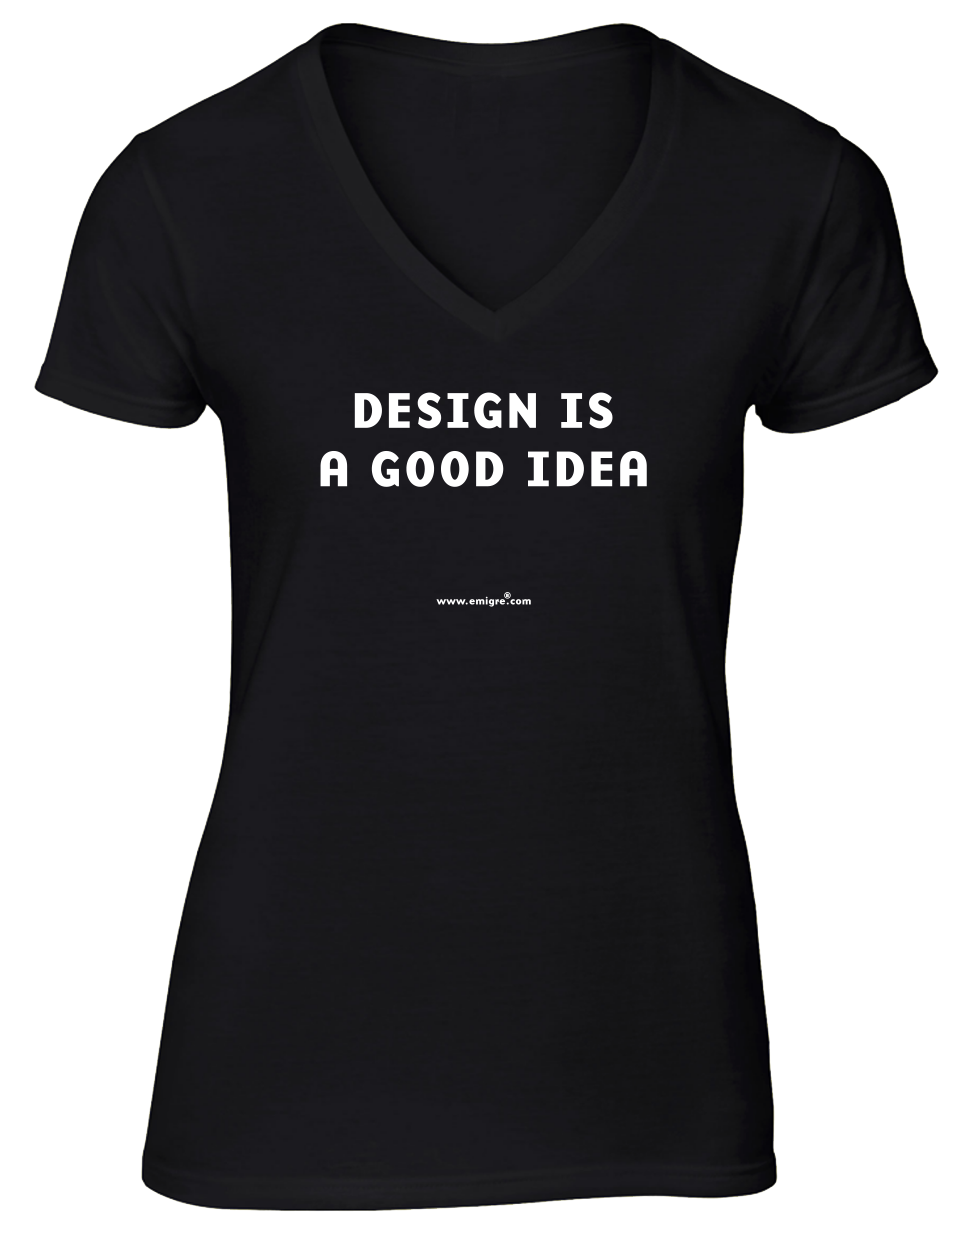 Design is a Good Idea (T-Shirt)